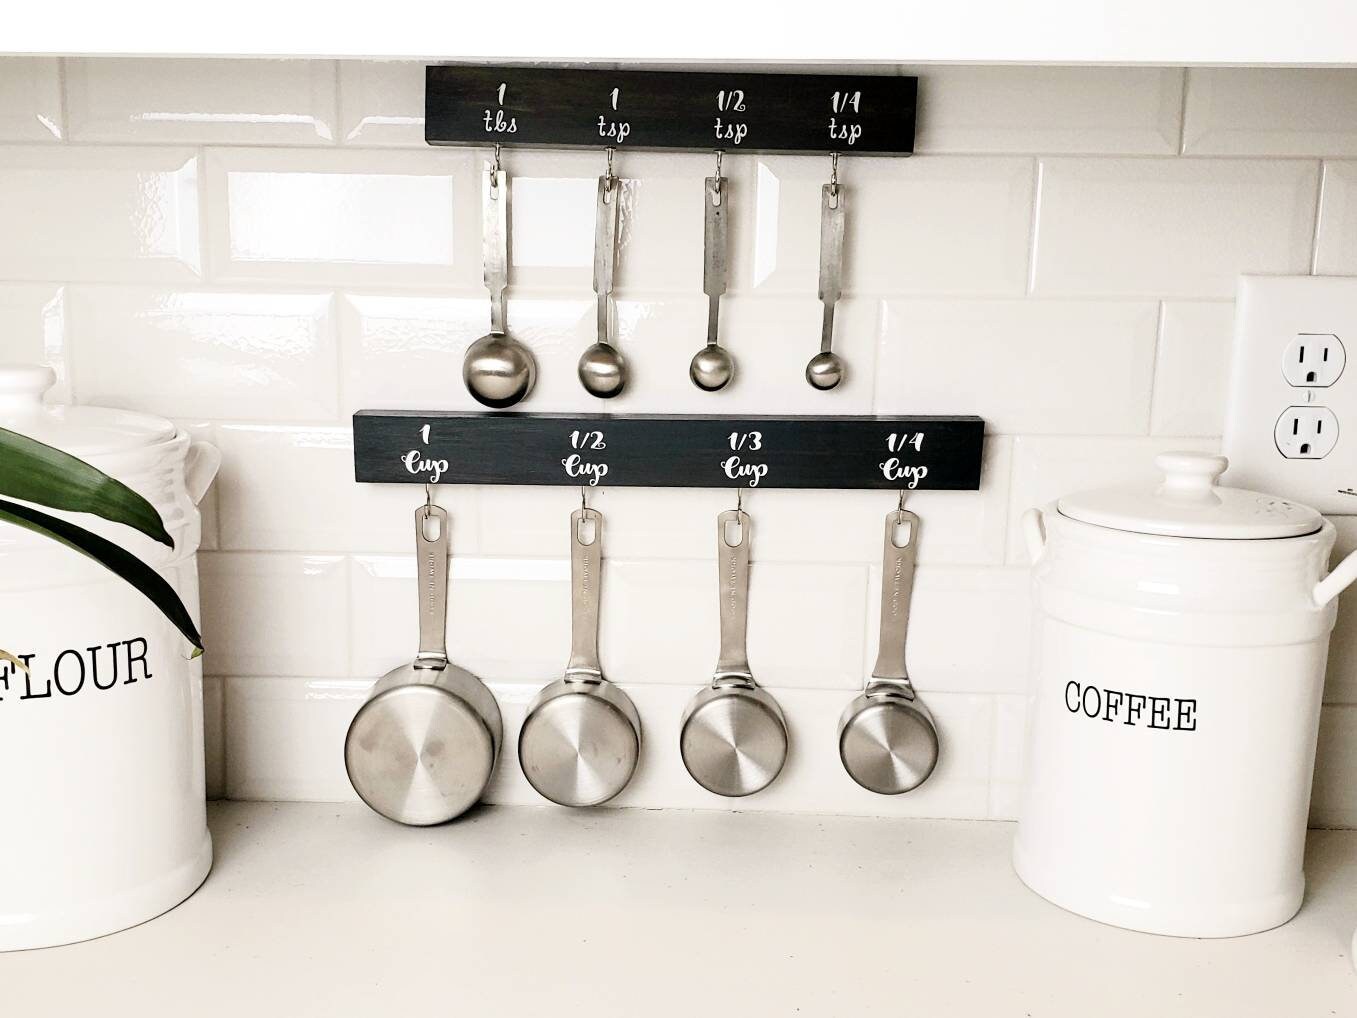 Measuring Cup and Spoon Holder, Organizer, Hanger, Kitchen Storage,  Farmhouse Décor, Kirchen Gadget, Housewarming, Utensil Holder 